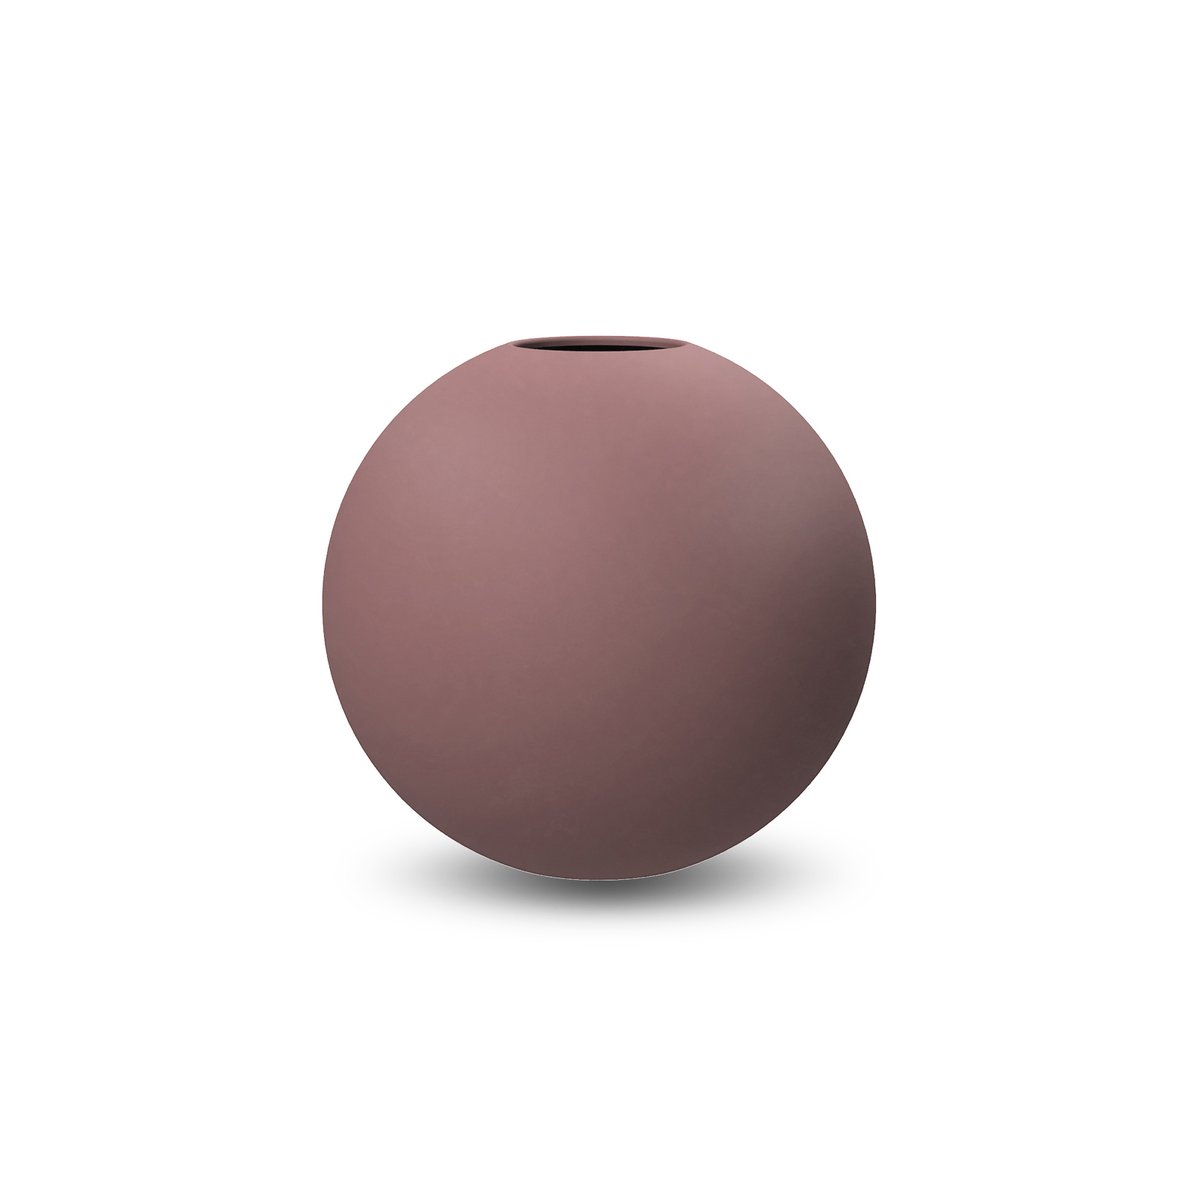 Cooee Design Ball vase cinder rose 8 cm